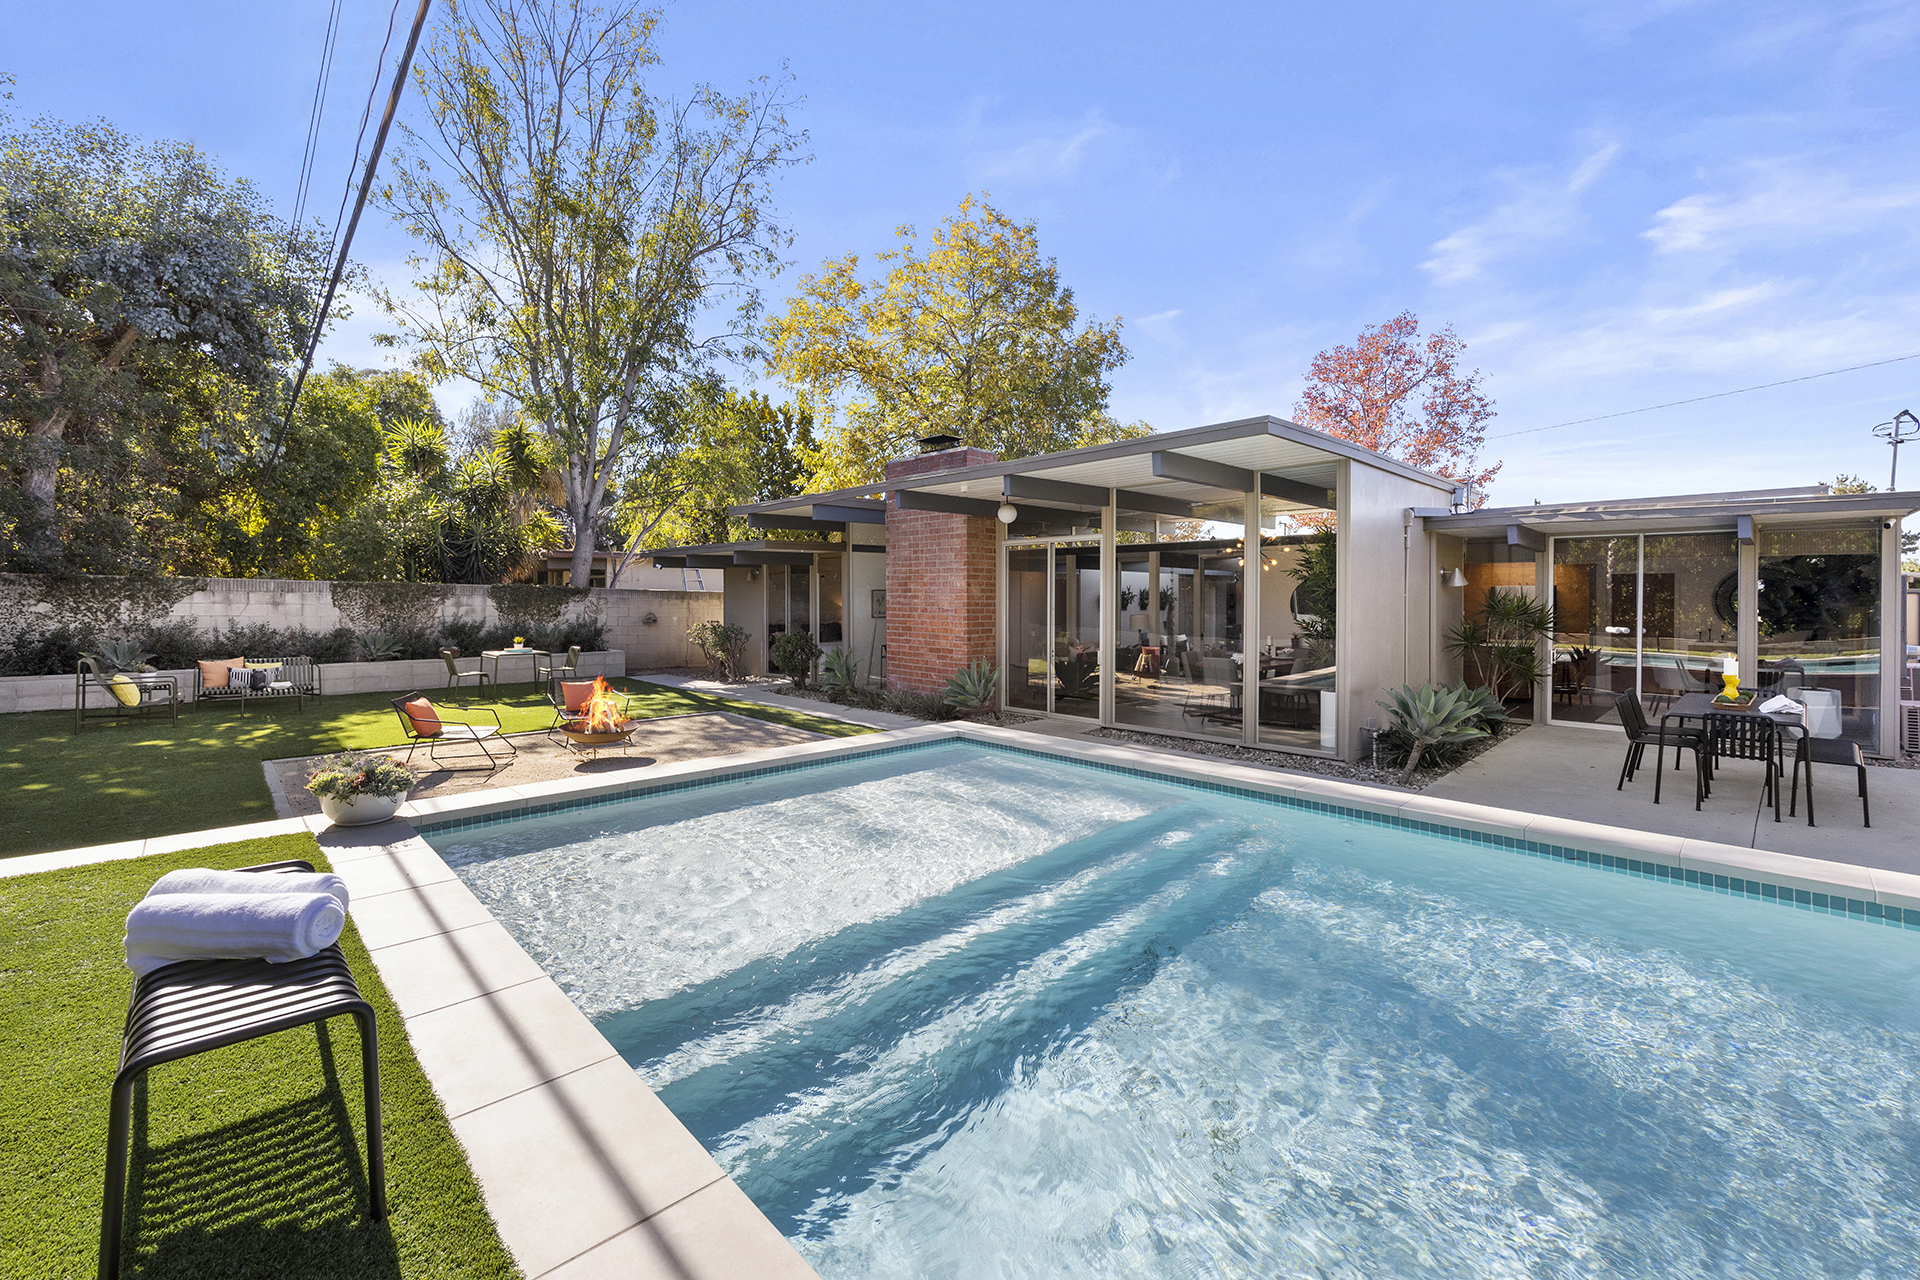 805 S. Oakwood Street, Orange, CA 92869 - Pool and Backyard View